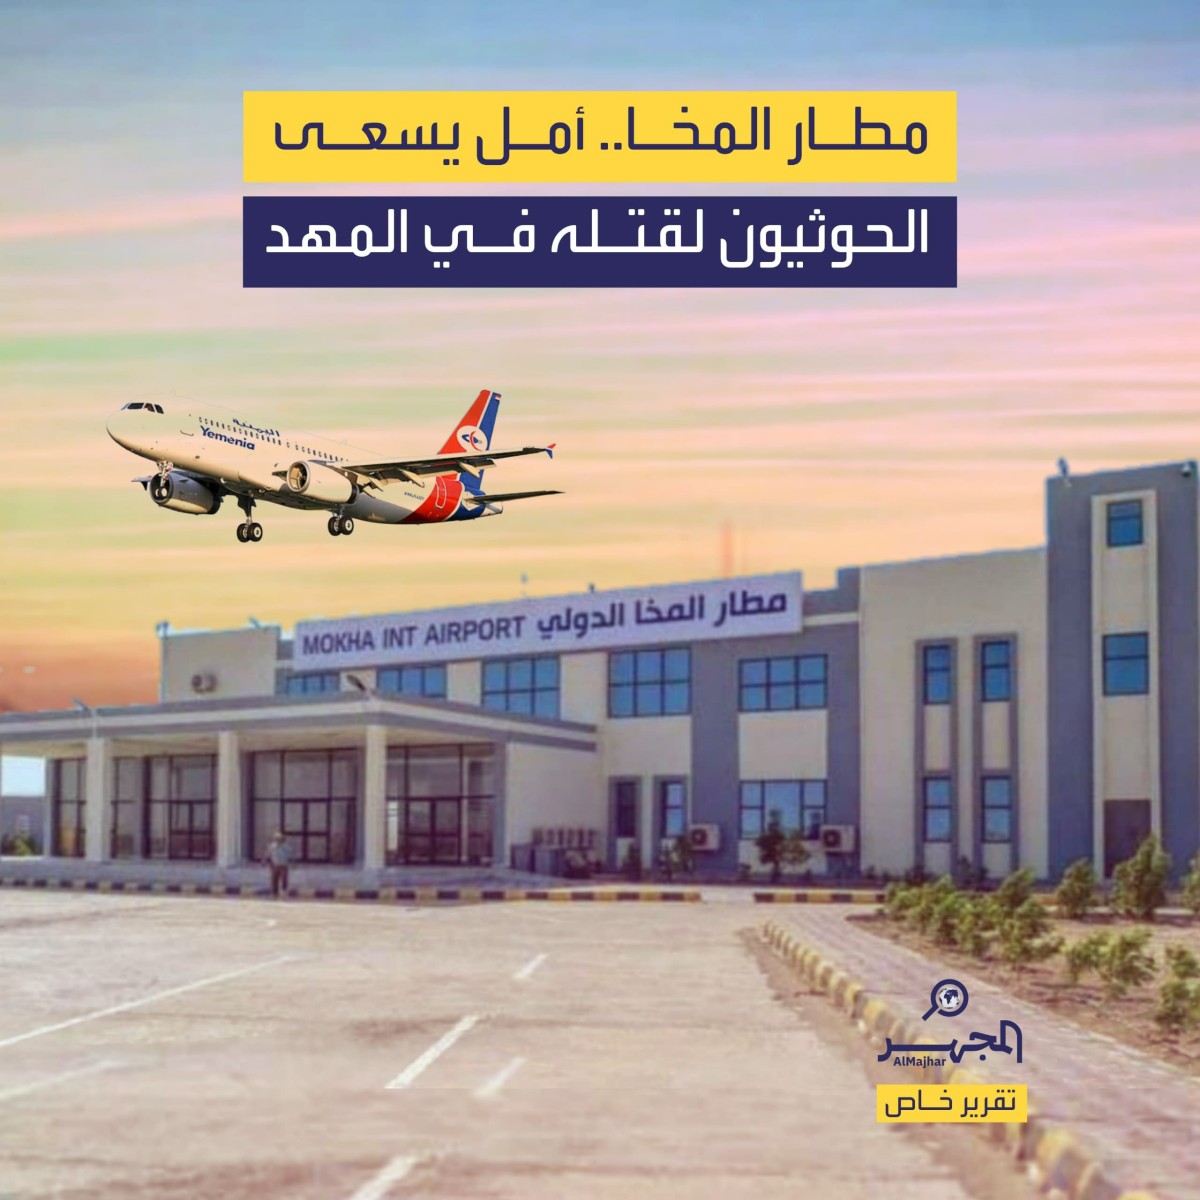 مطار المخا .. أمل يسعى الحوثيون لقتله في المهد (تقرير خاص)